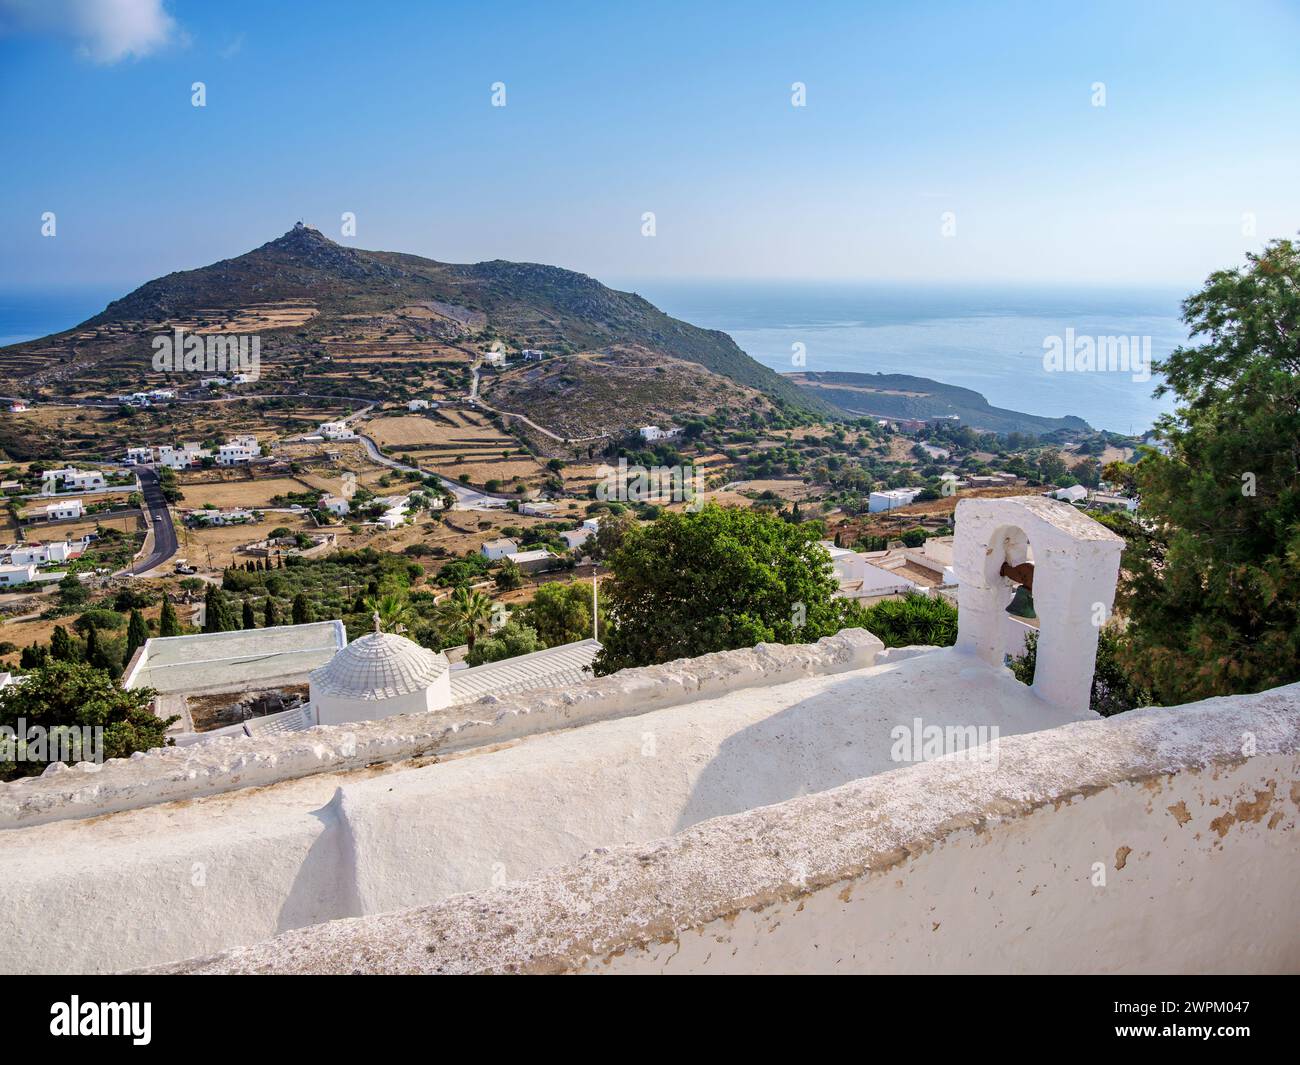 Eglises blanchies à la chaux de Patmos Chora, vue élevée, île de Patmos, Dodécanèse, îles grecques, Grèce, Europe Banque D'Images